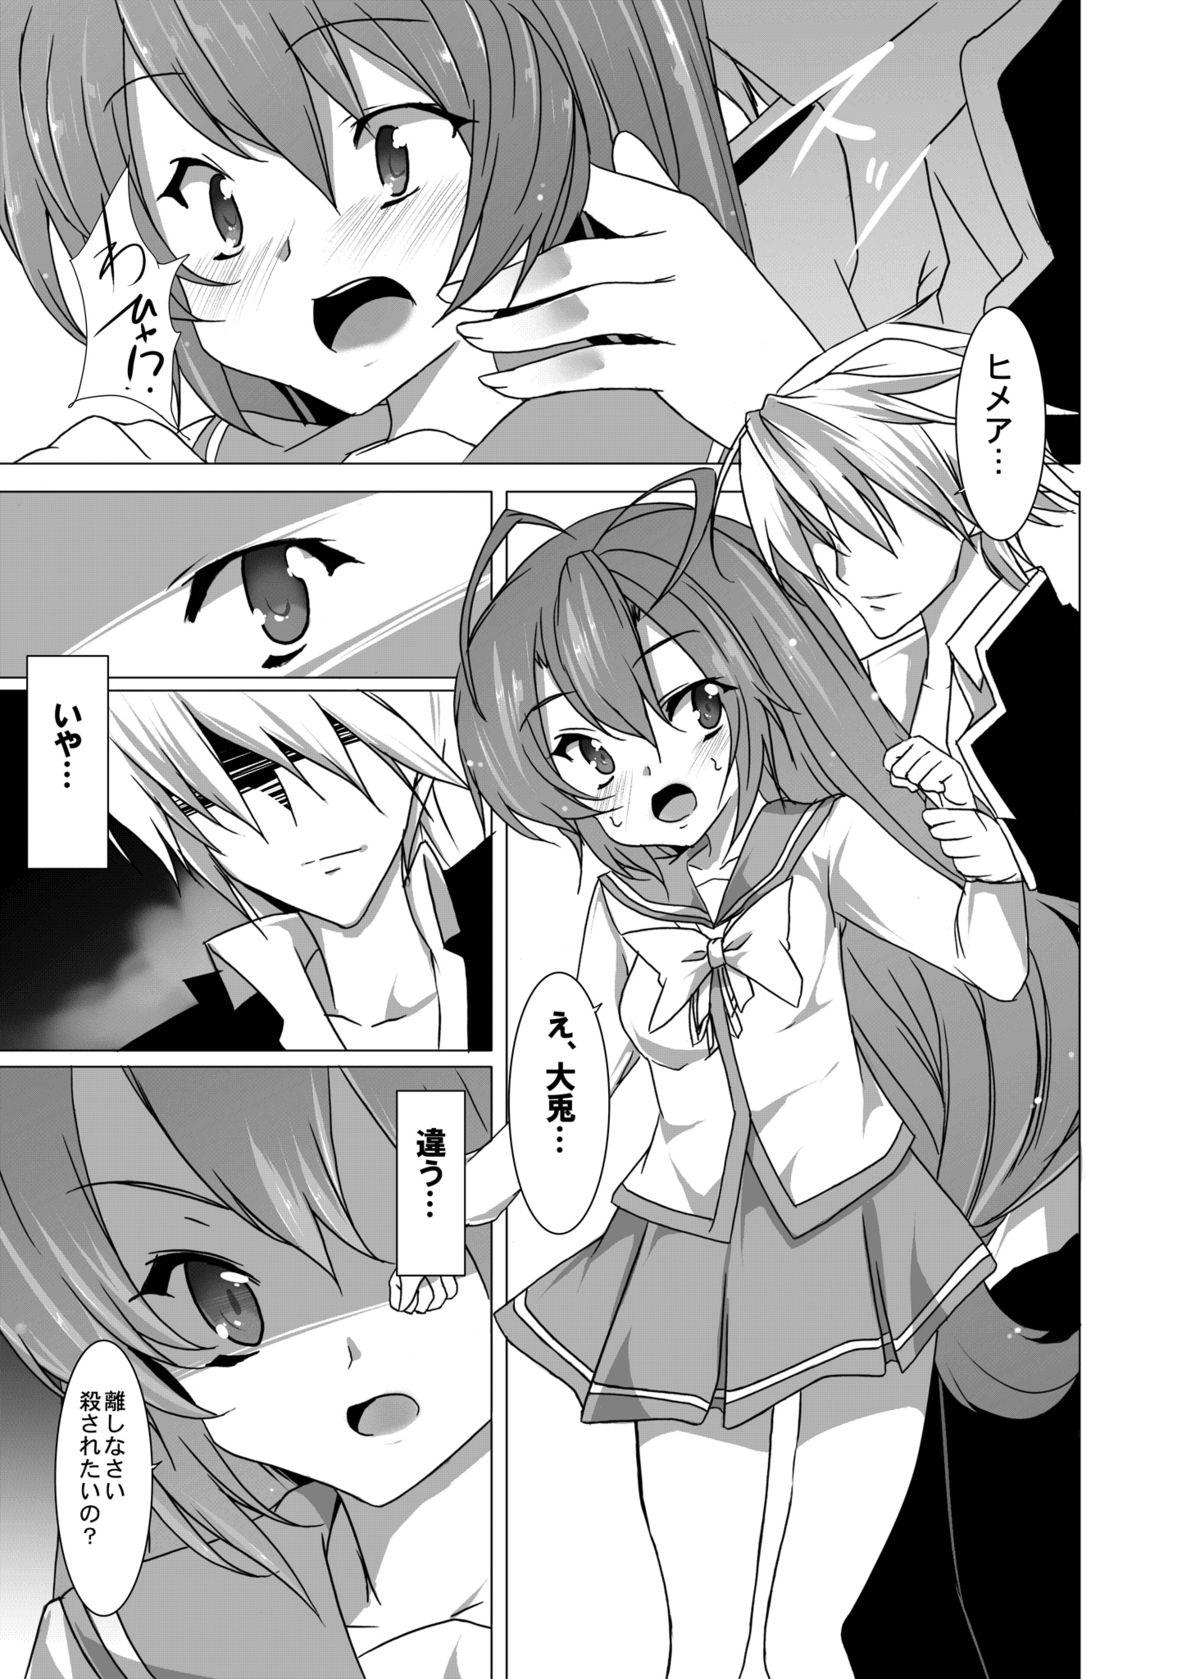 Chick Yumeiro Communication - Itsuka tenma no kuro usagi Friend - Page 6